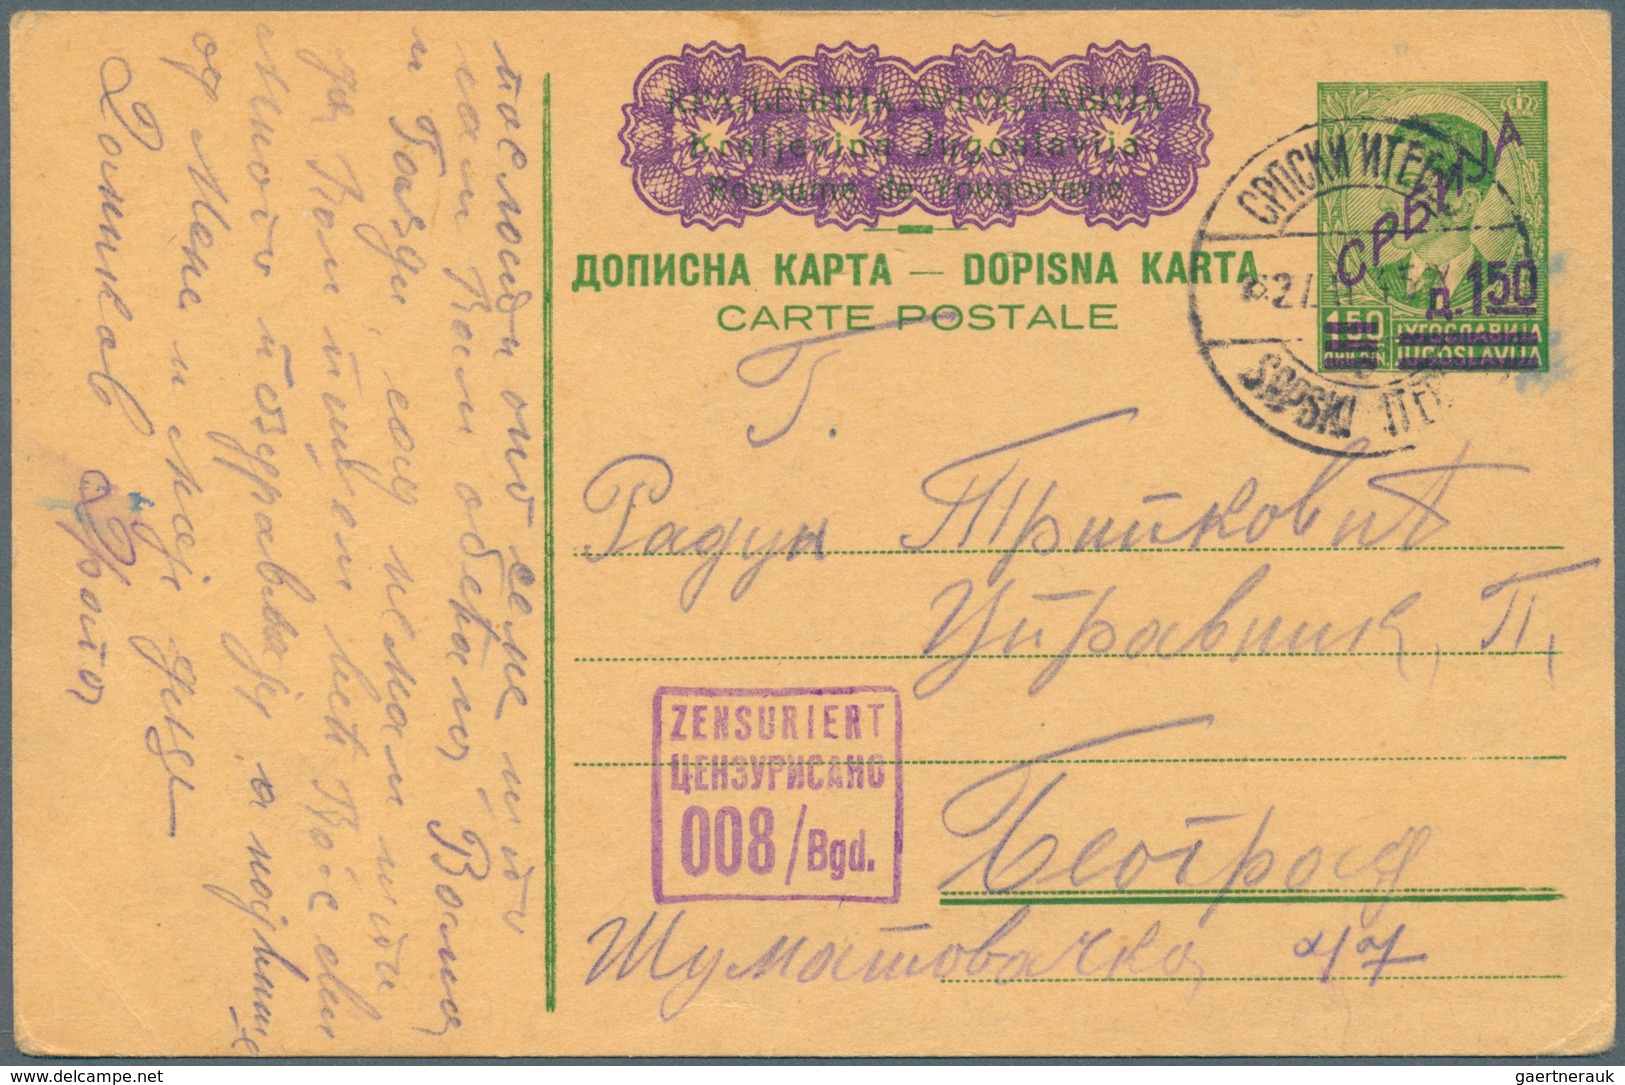 31963 Deutsche Besetzung II. WK: 1938/1945. GANZSACHEN. Spannende Sammlung von 58 Postkarten aus versch. G